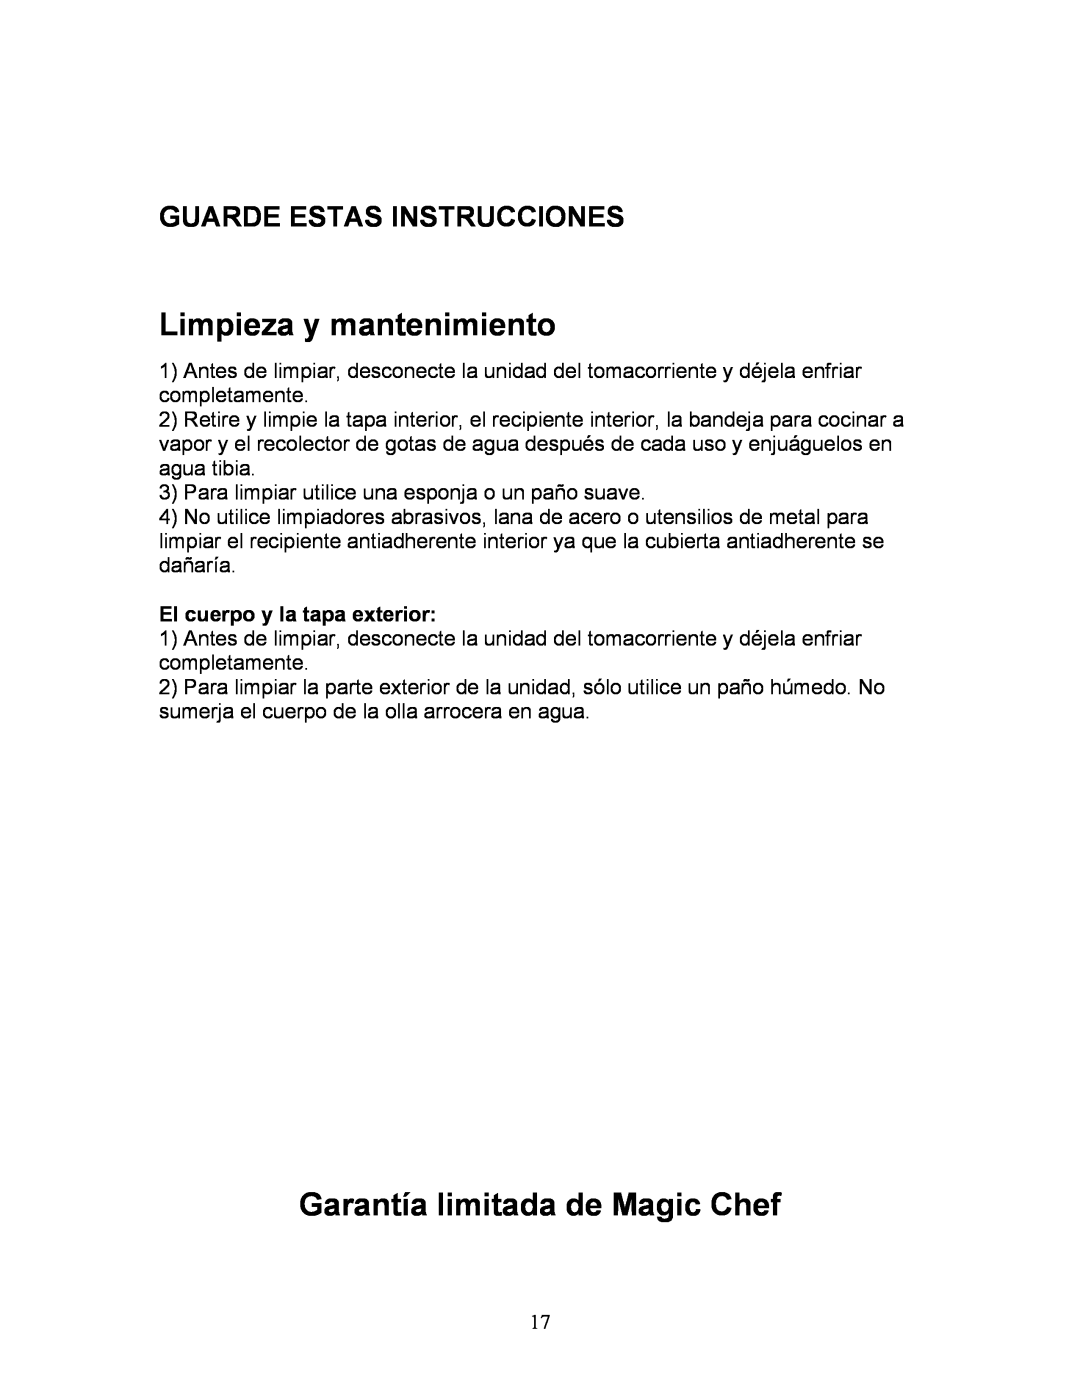 Magic Chef MCRC1W manual Limpieza y mantenimiento, Garantía limitada de Magic Chef, El cuerpo y la tapa exterior 